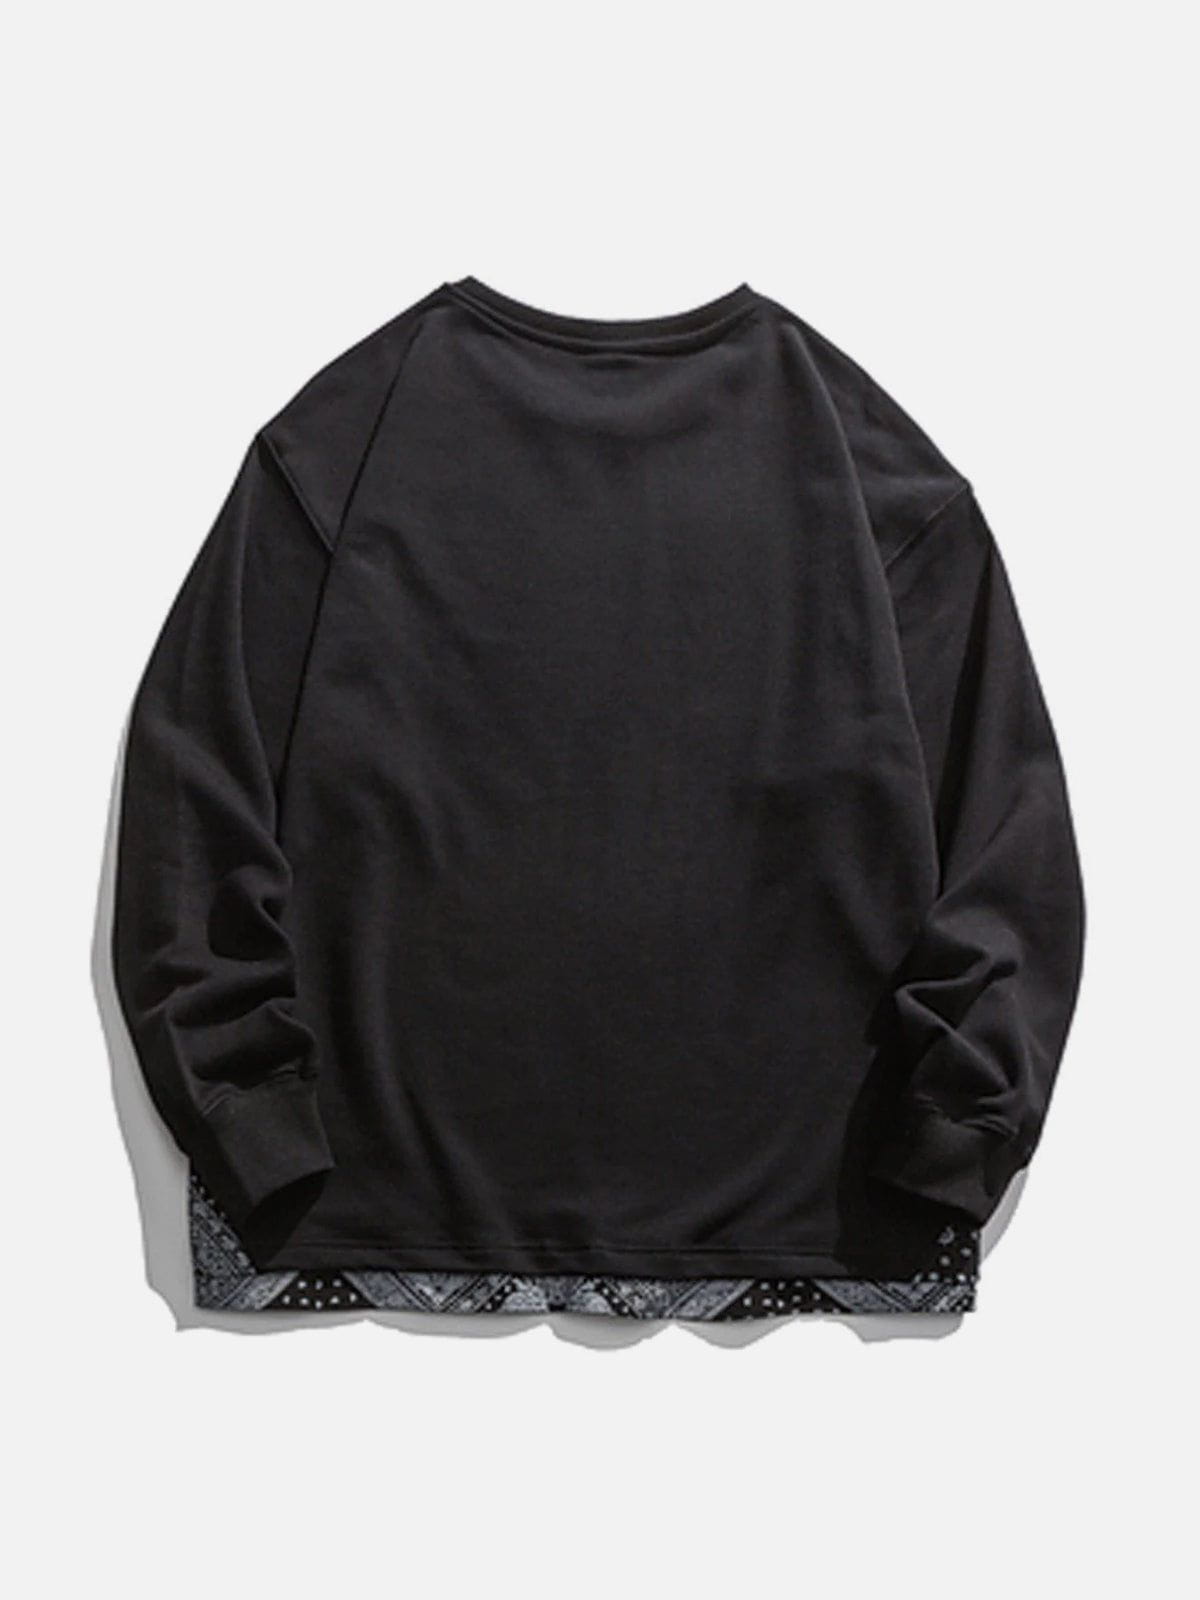 LUXENFY™ - Vintage Bandana Panel Sweatshirt luxenfy.com